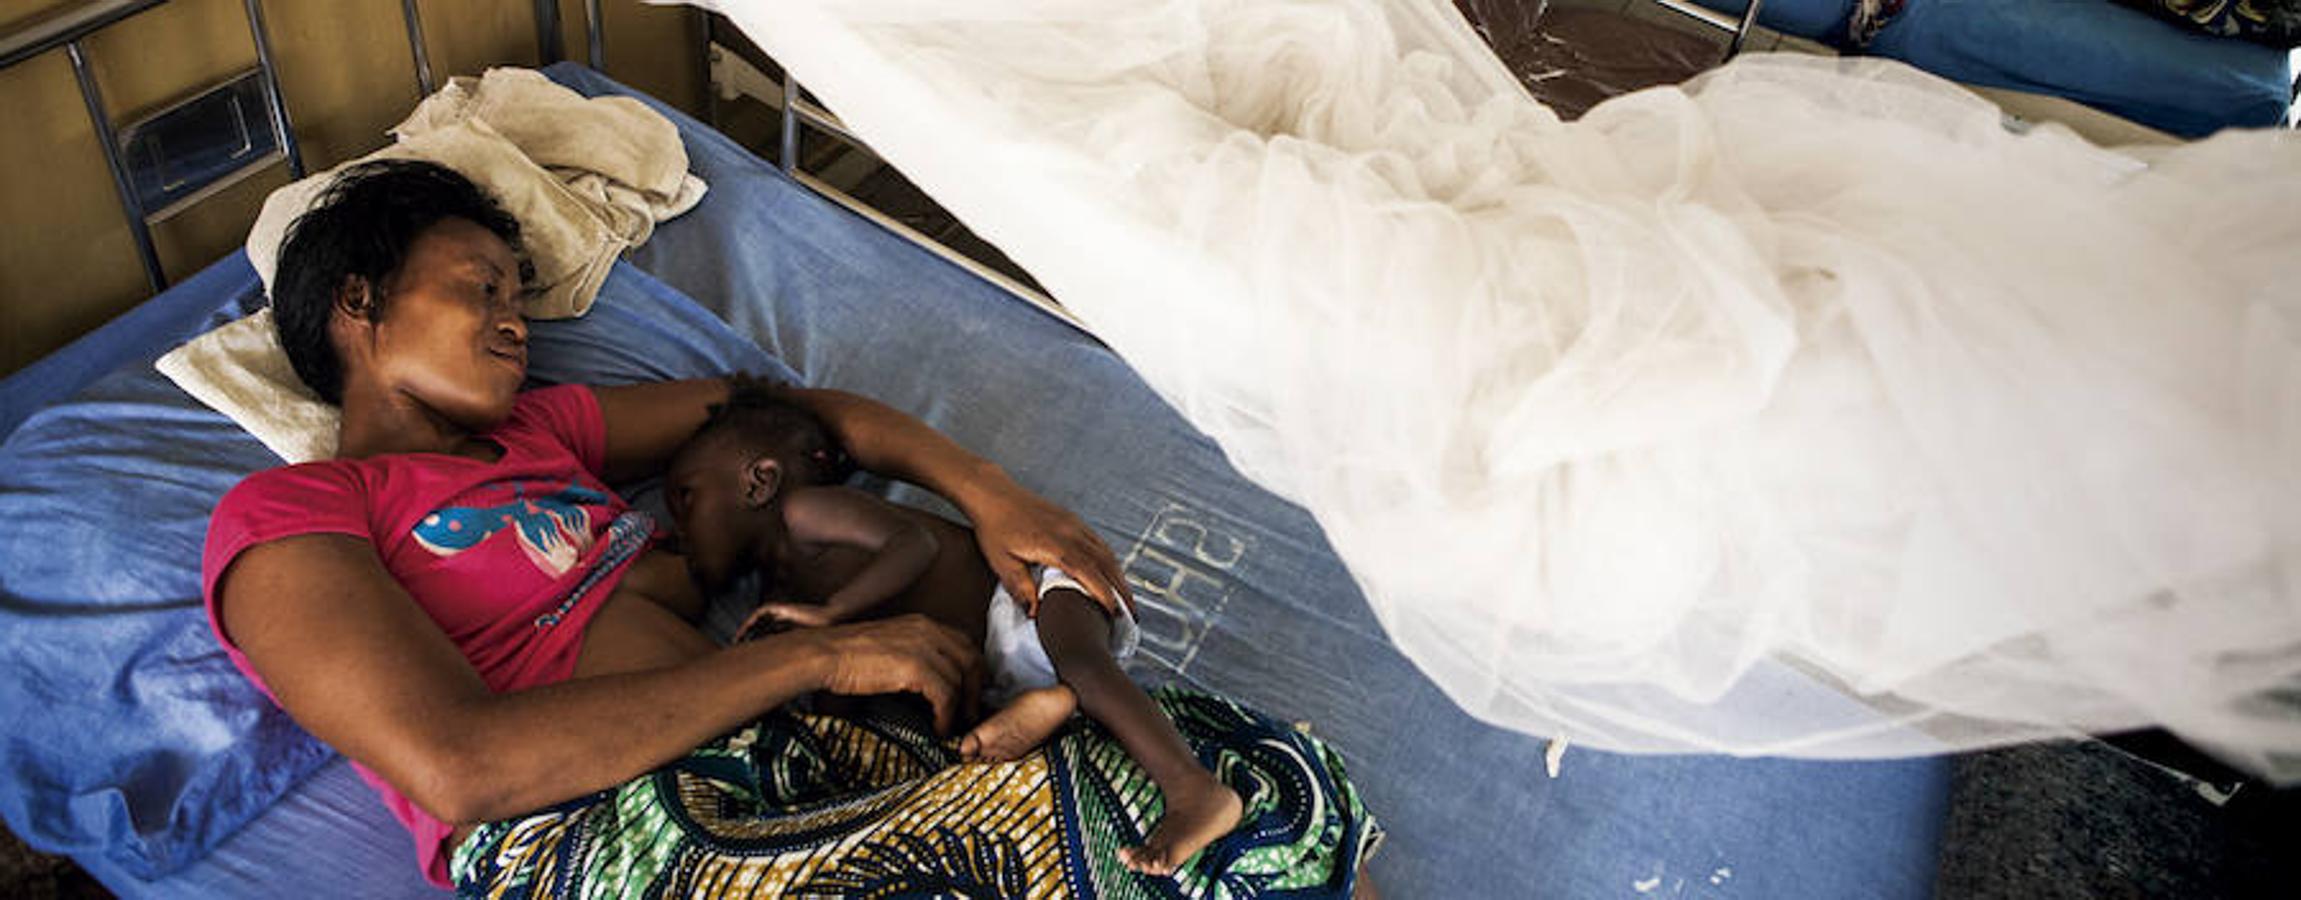 El virus del Ébola embistió duramente a un país ya deteriorado por diez años de guerra civil. Hoy el mayor reto es que la epidemia que acabó con la vida de cerca de 10.000 personas no arrase a su paso los medios de vida y la seguridad alimentaria de miles de supervivientes.